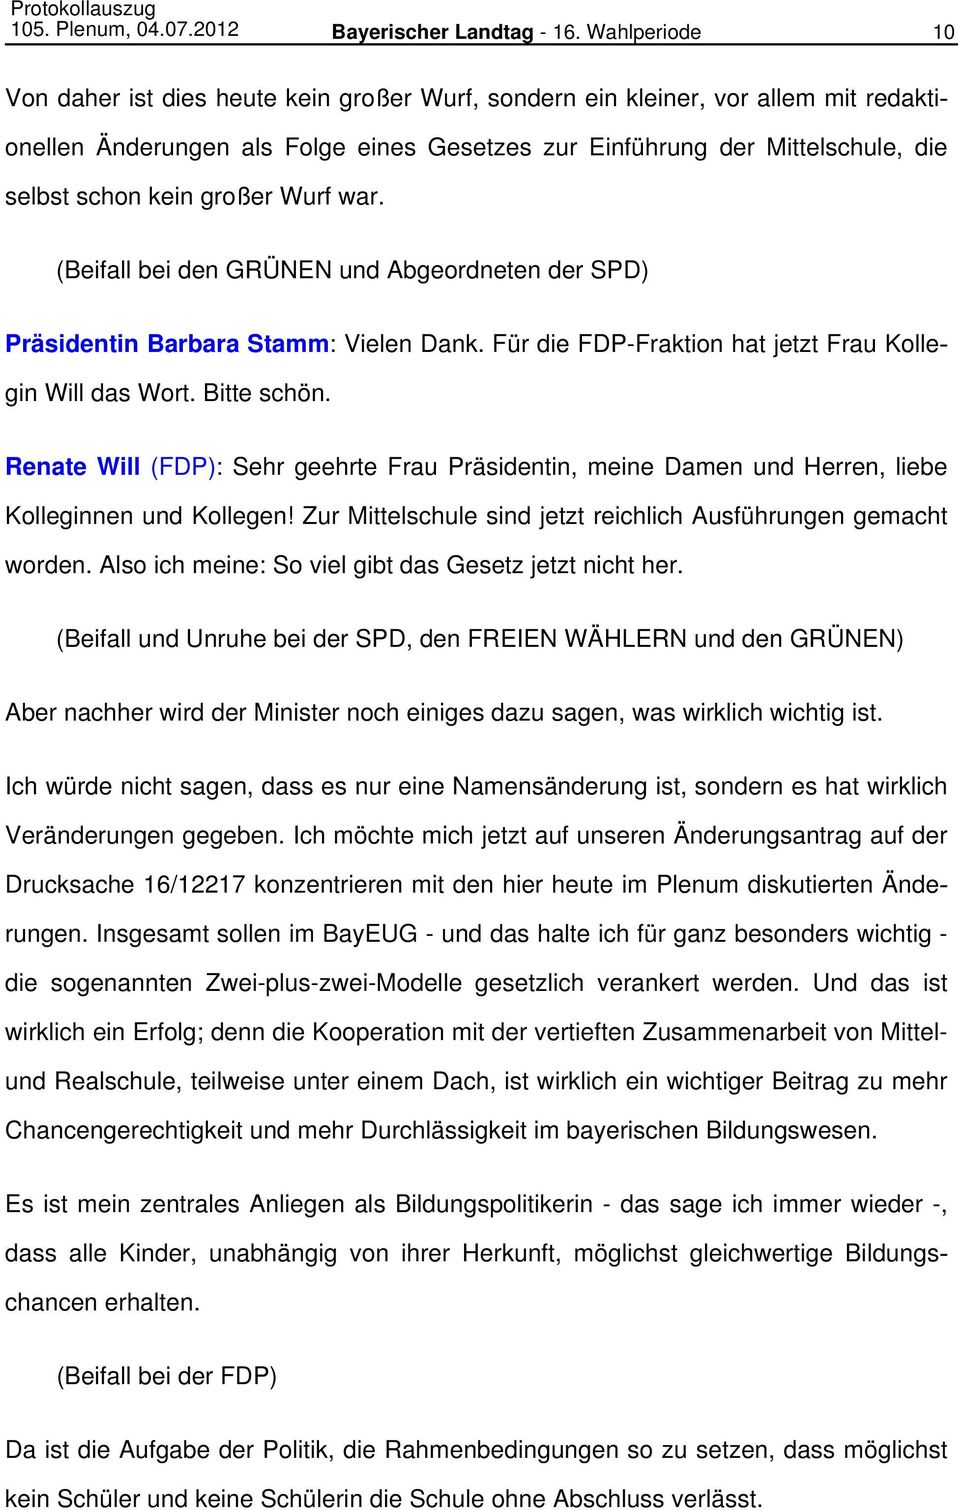 großer Wurf war. (Beifall bei den GRÜNEN und Abgeordneten der SPD) Präsidentin Barbara Stamm: Vielen Dank. Für die FDP-Fraktion hat jetzt Frau Kollegin Will das Wort. Bitte schön.